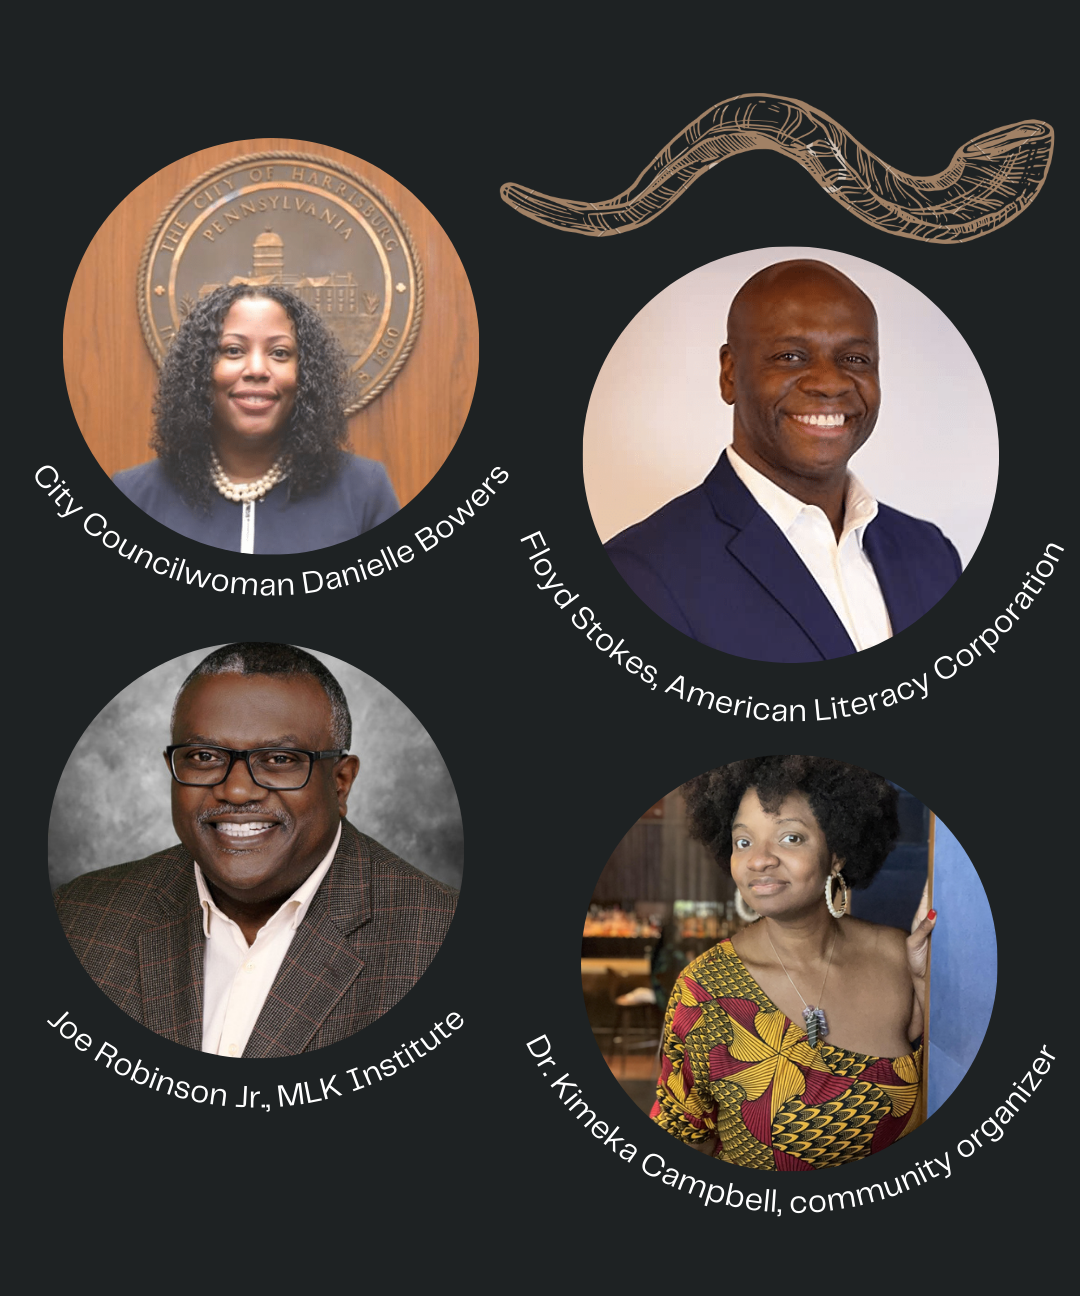 Meet these inspiring Black leaders in Harrisburg